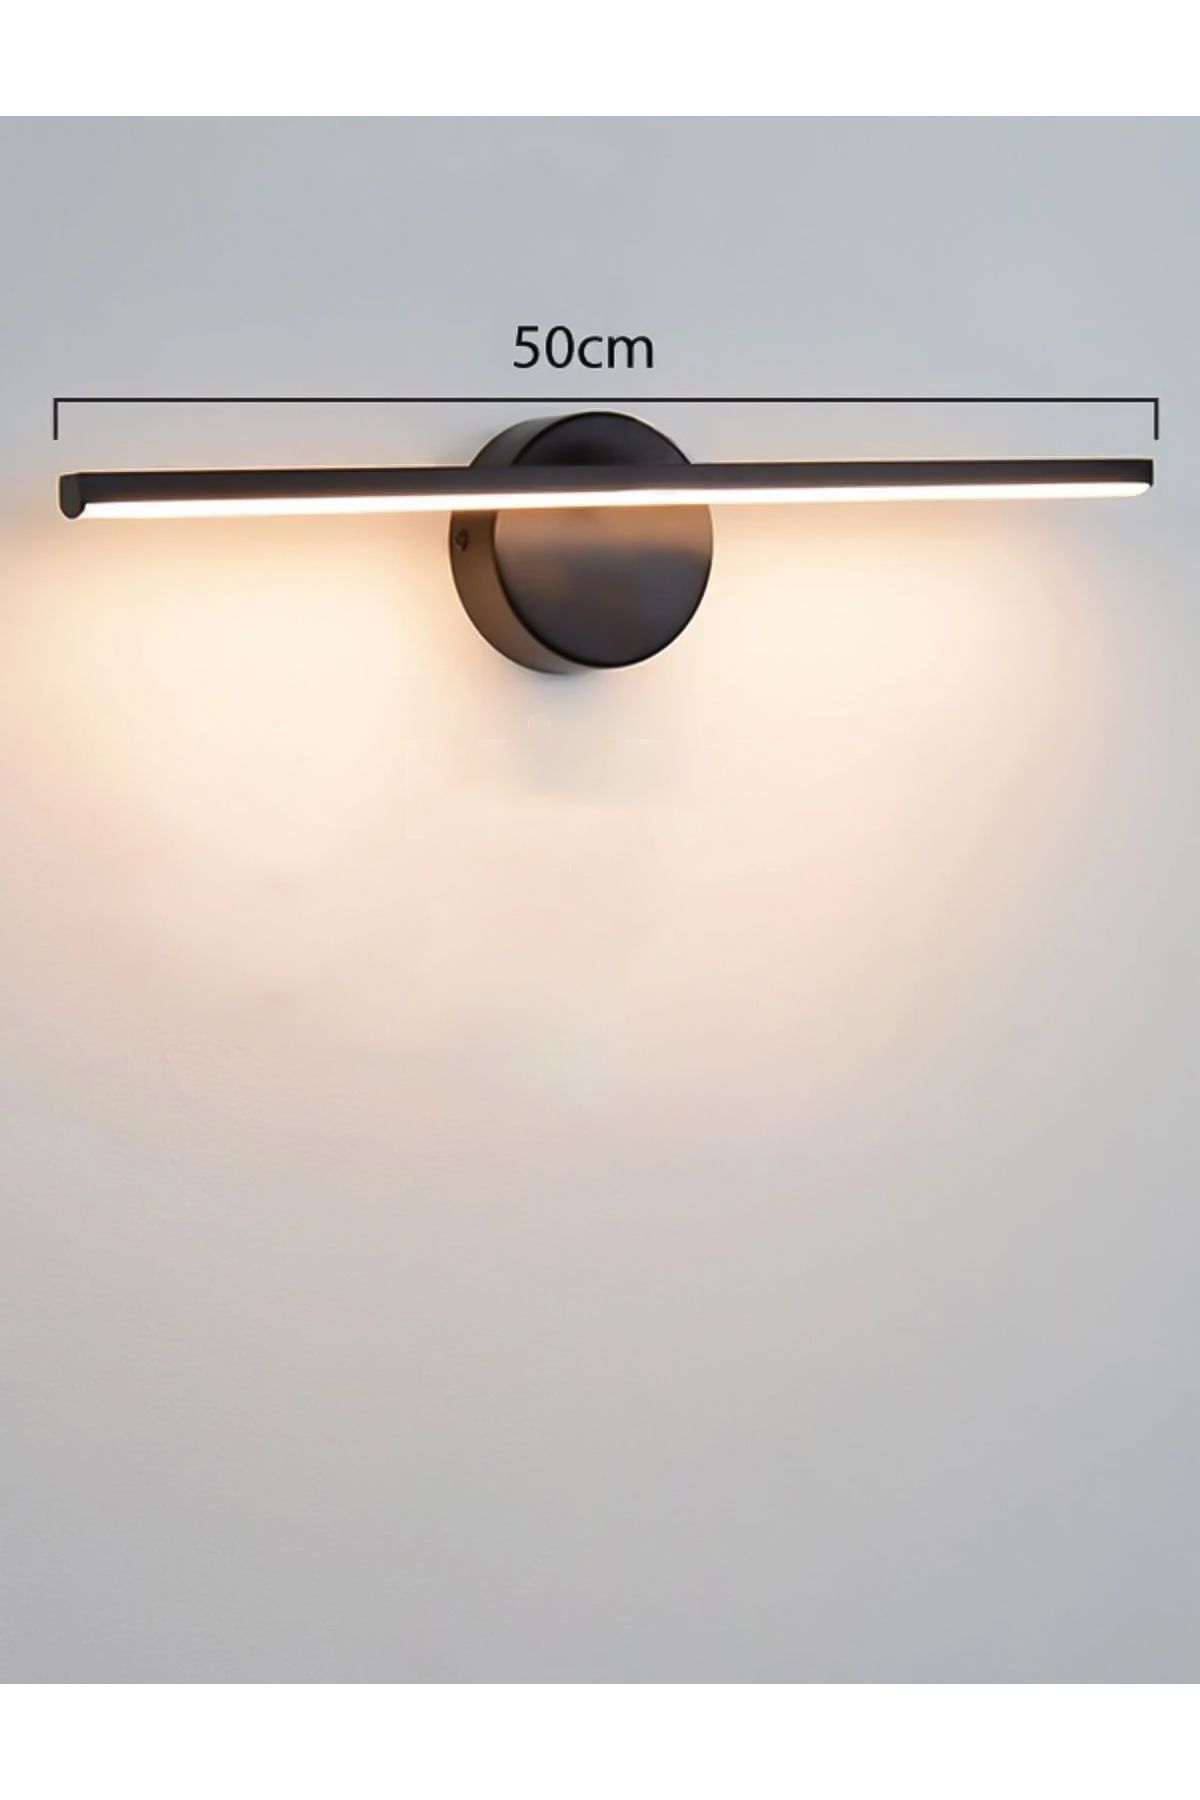 Avizen Lighting Project Banyo Duvar Ayna Tablo Aydınlatması Led Flüt Aplik Günışığı 50 Cm